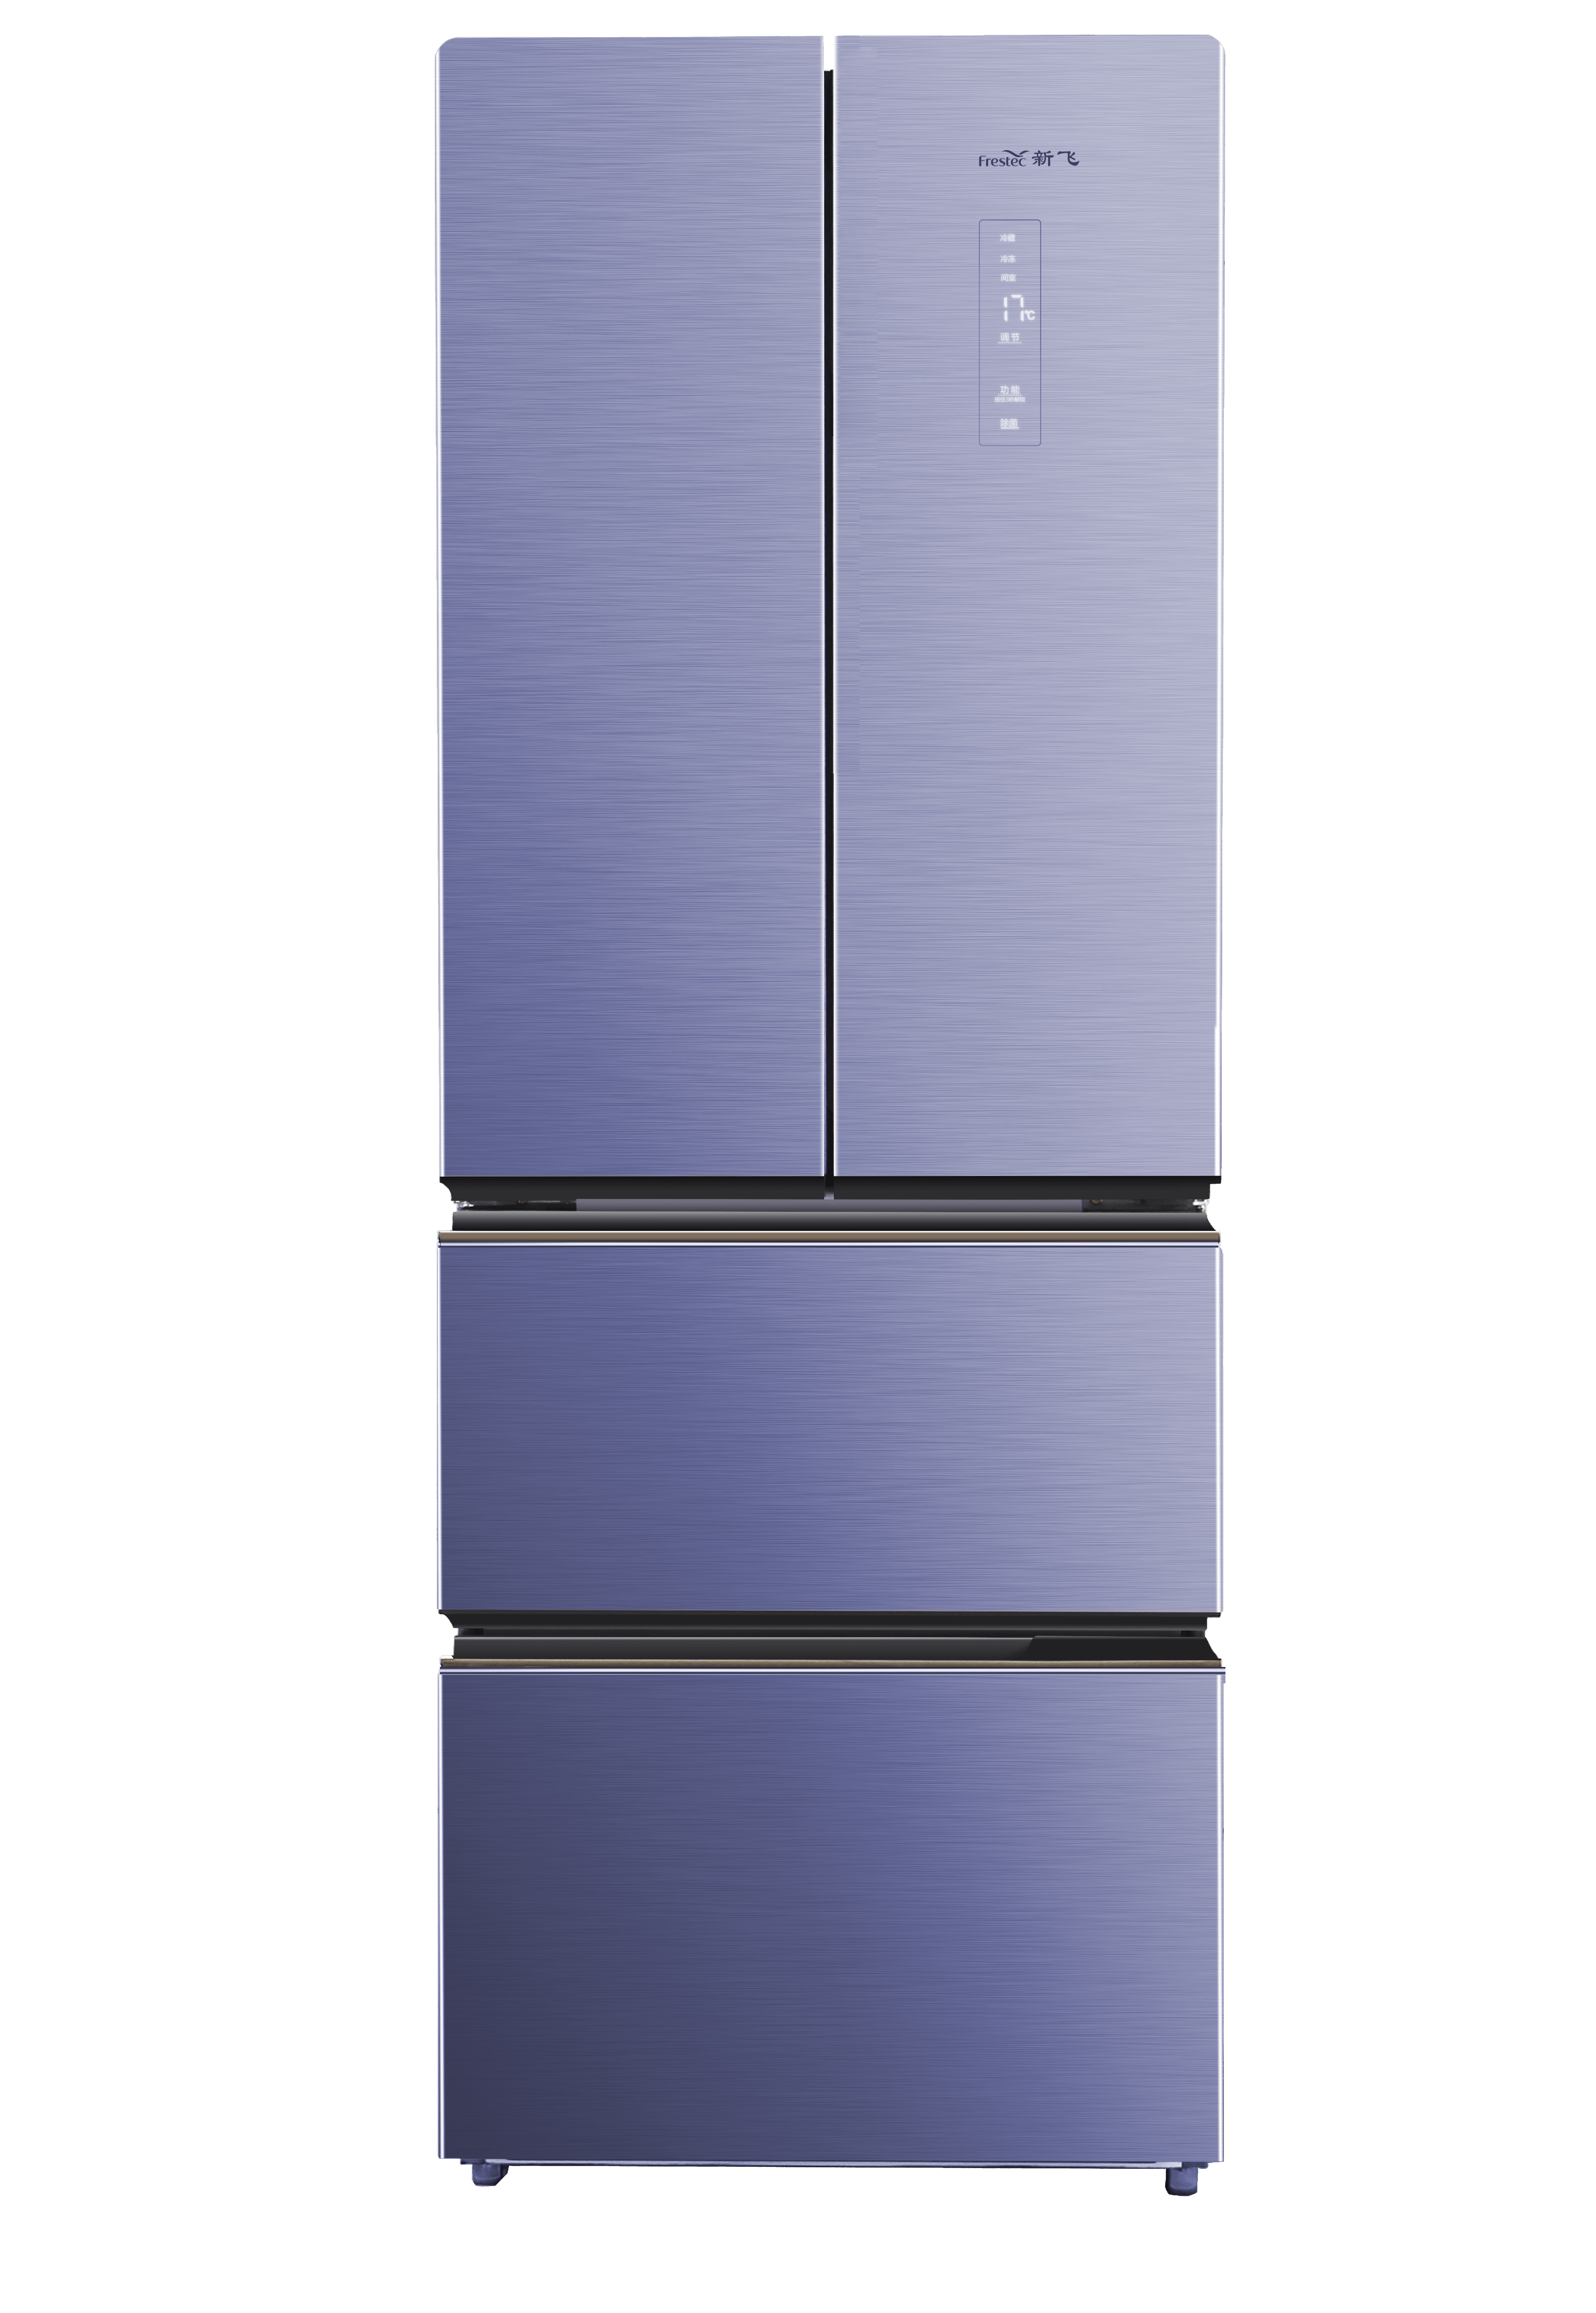 Multi-door(4 door) refrigerator